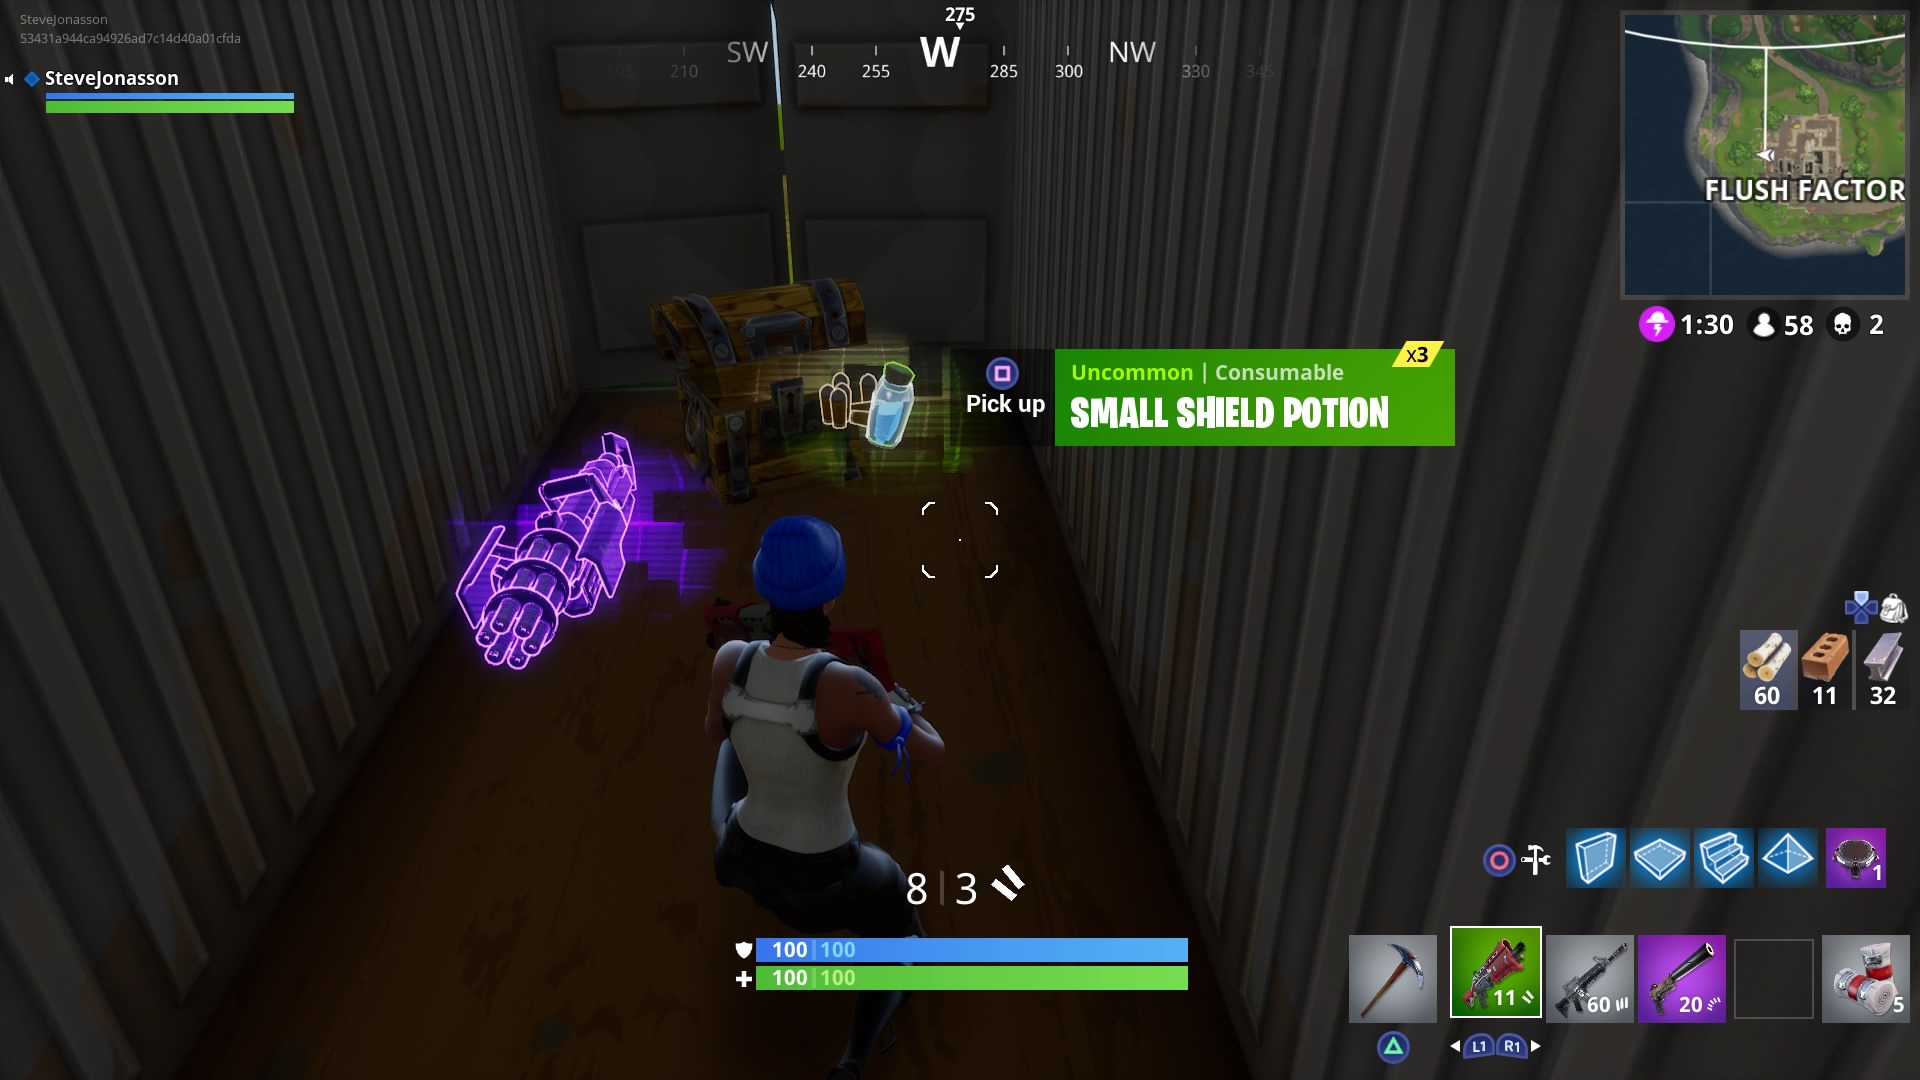 Purple minigun in Fortnite from treasure